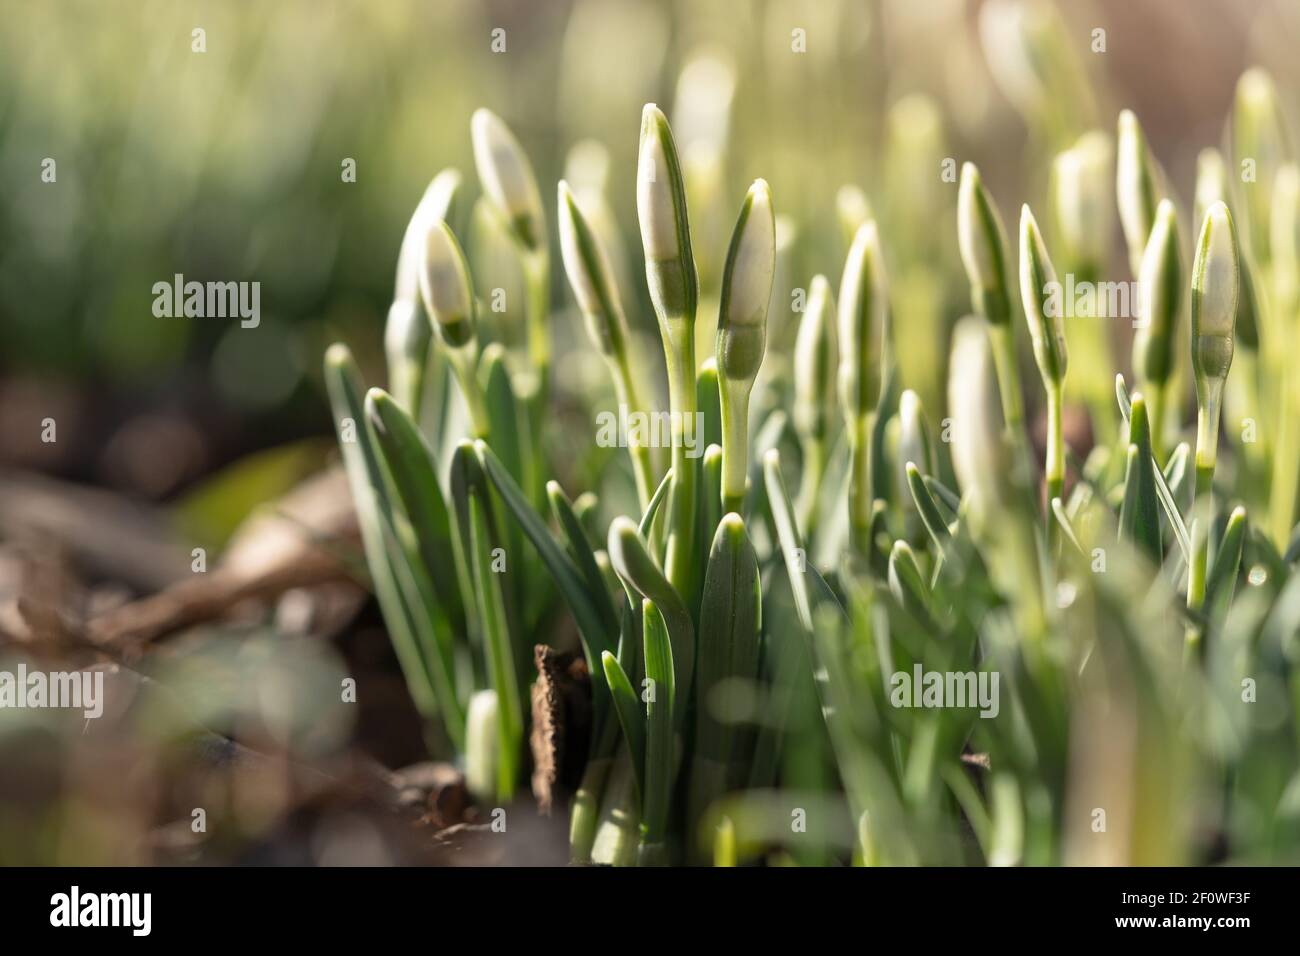 Zarte Schneeglöckchen Galanthus nivalis mit ungeblasenen Knospen an sonnigen Tagen, Makroaufnahme. Frühling. Stockfoto